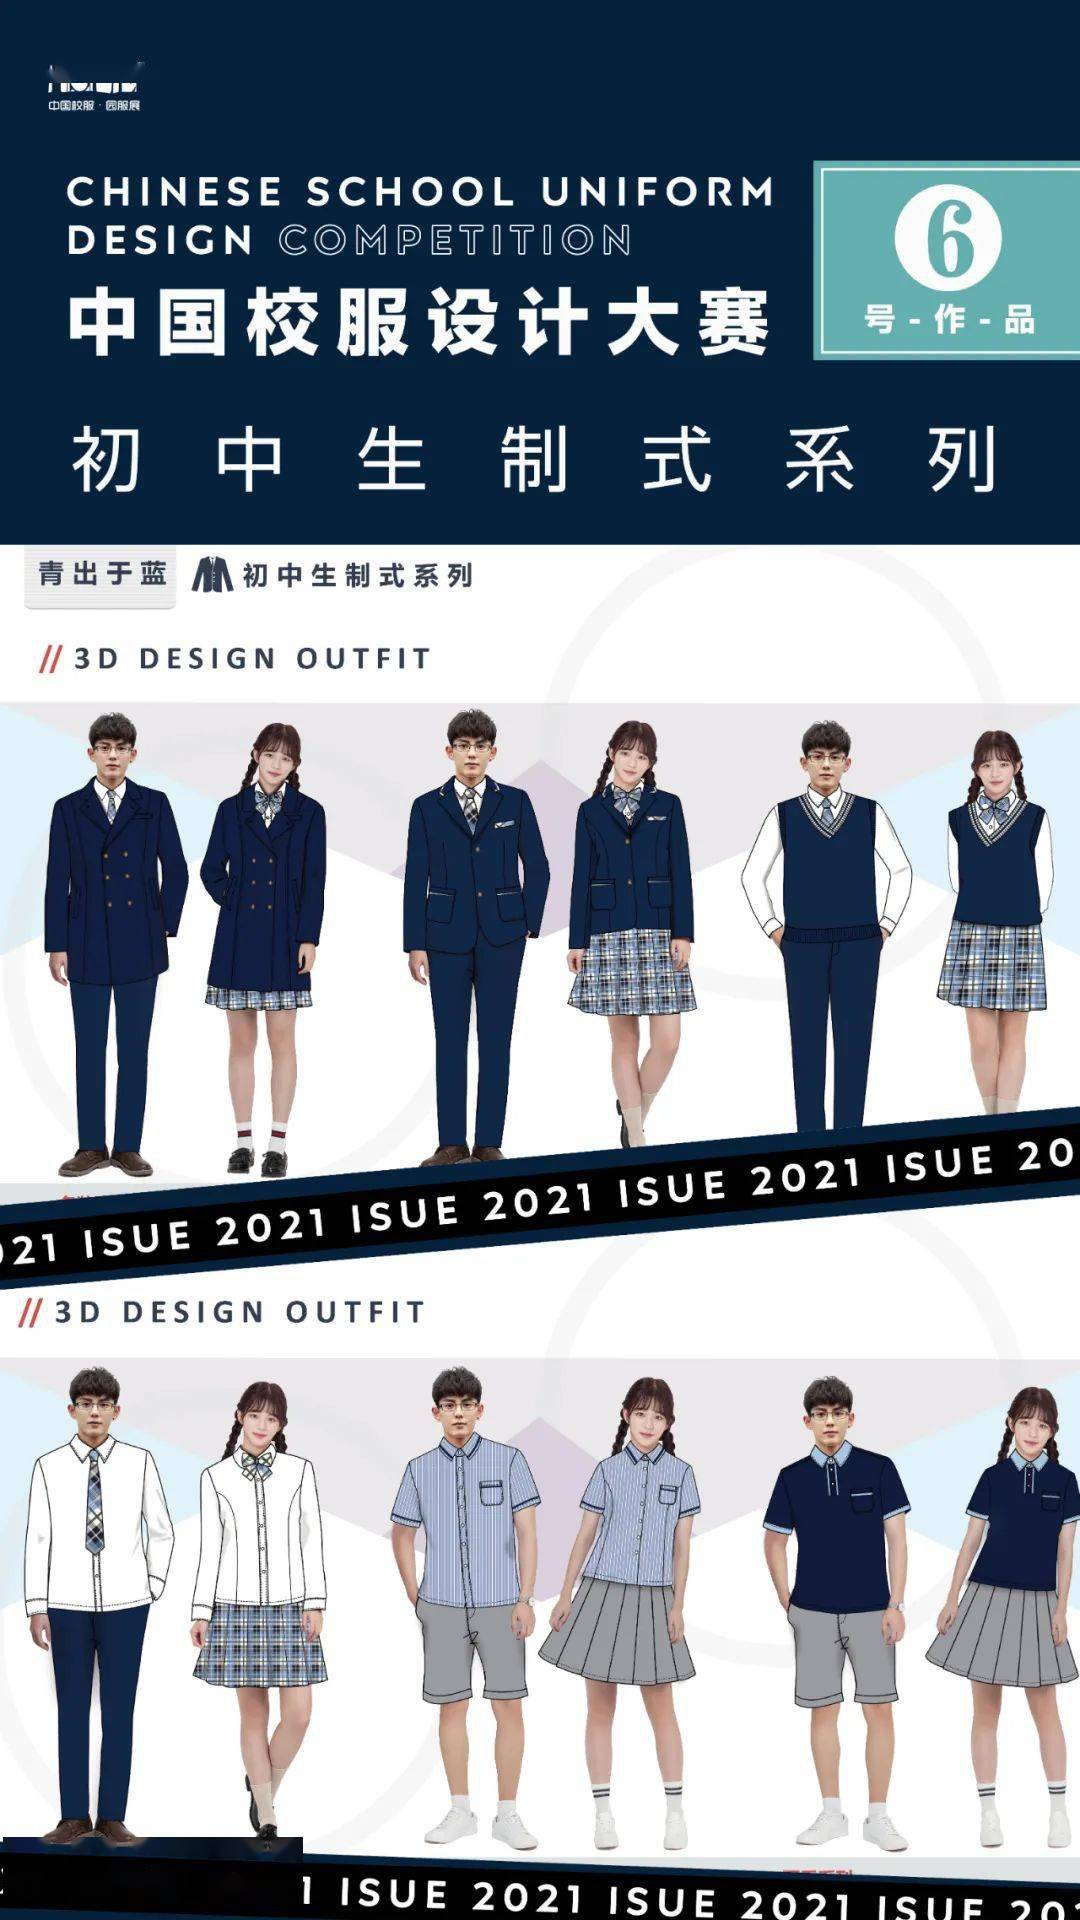 【2021中国校服设计大赛】各组别作品名单 设计效果图